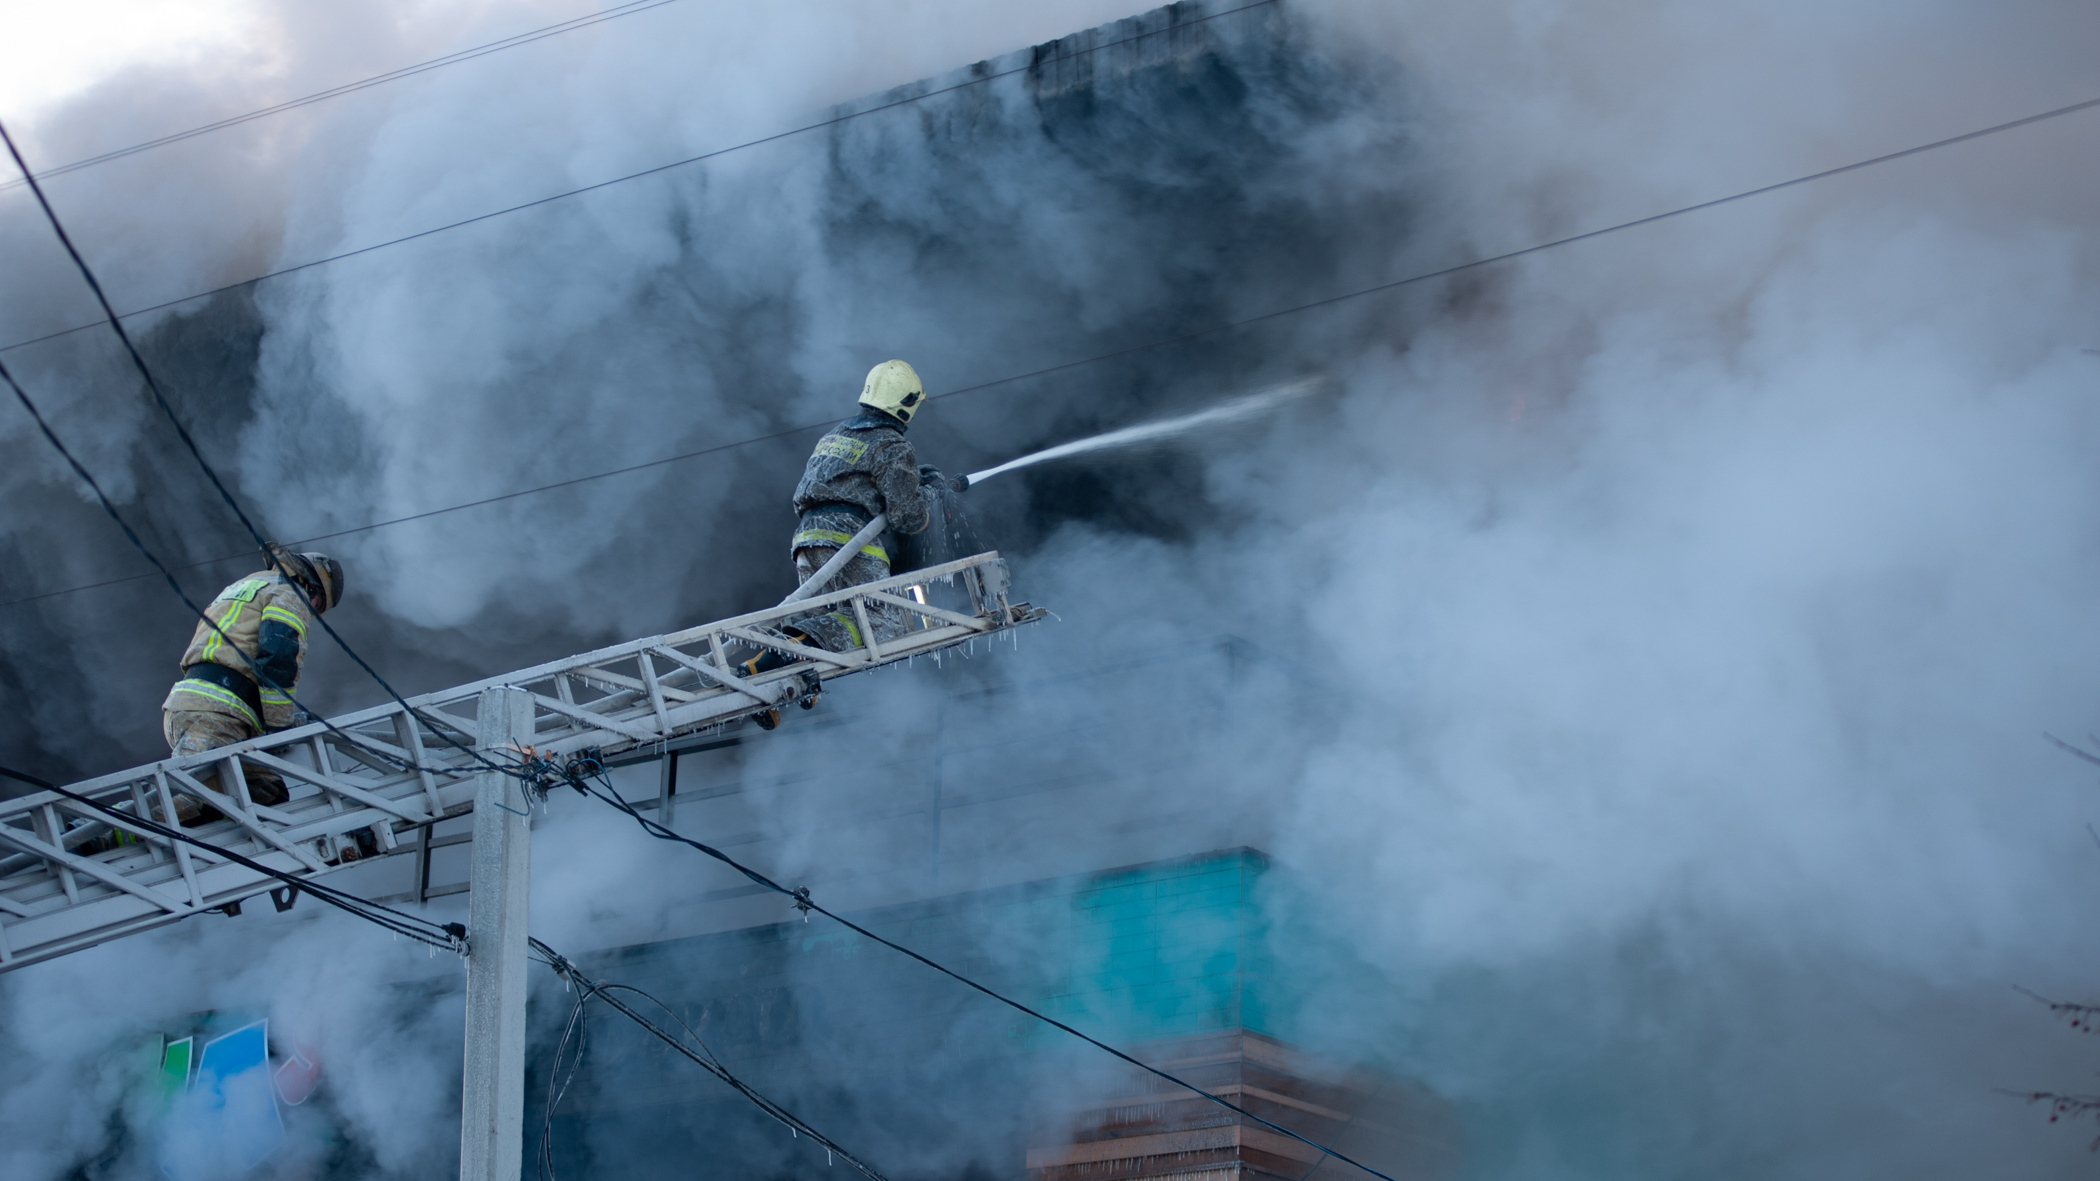 Здание с цехами загорелось в Приморье в разгар рабочего дня